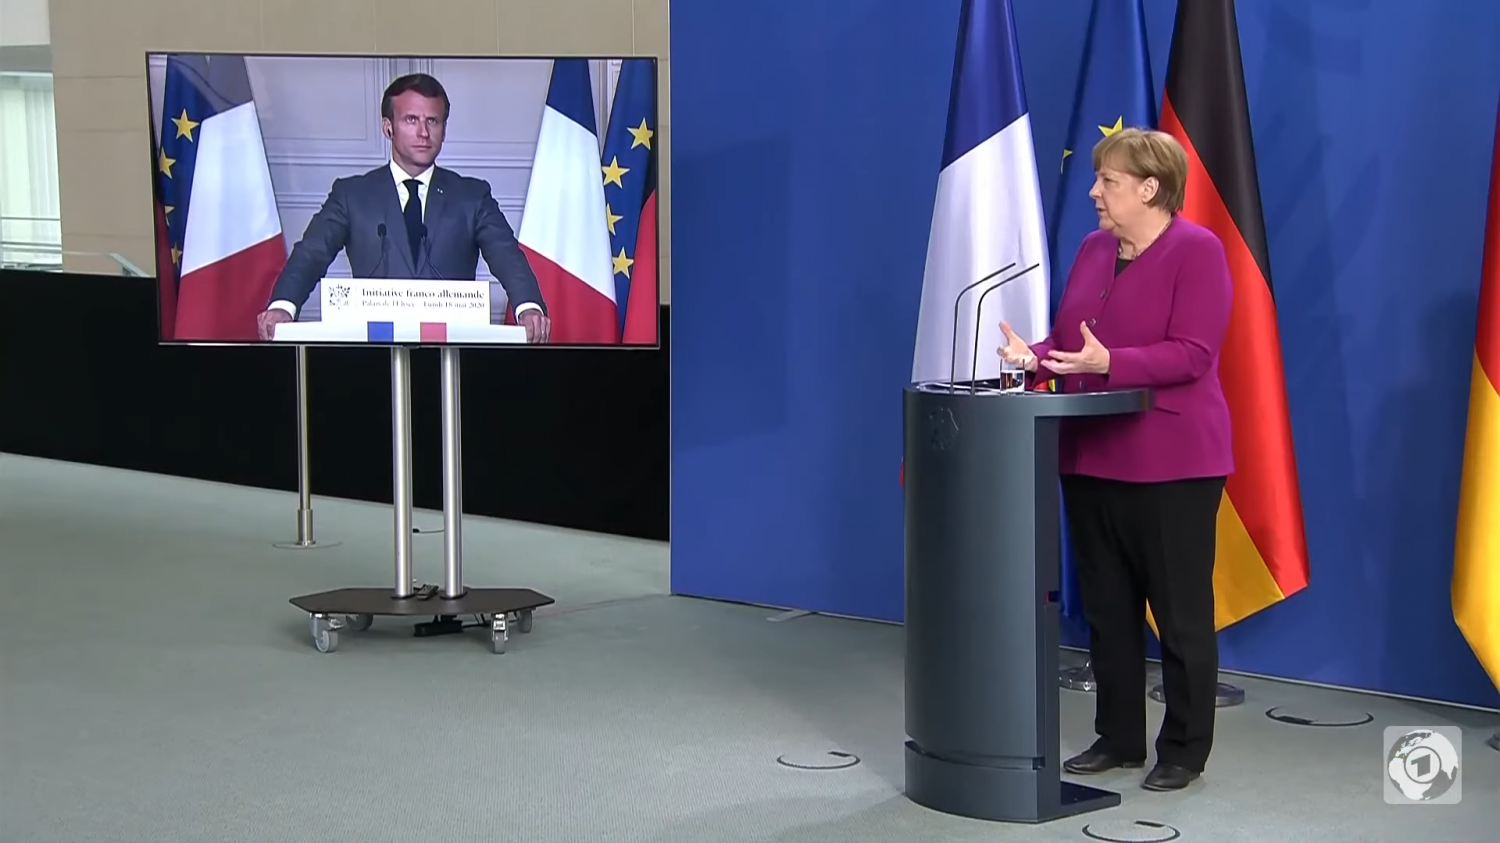 screenshot persconferentie Merkel en Macron